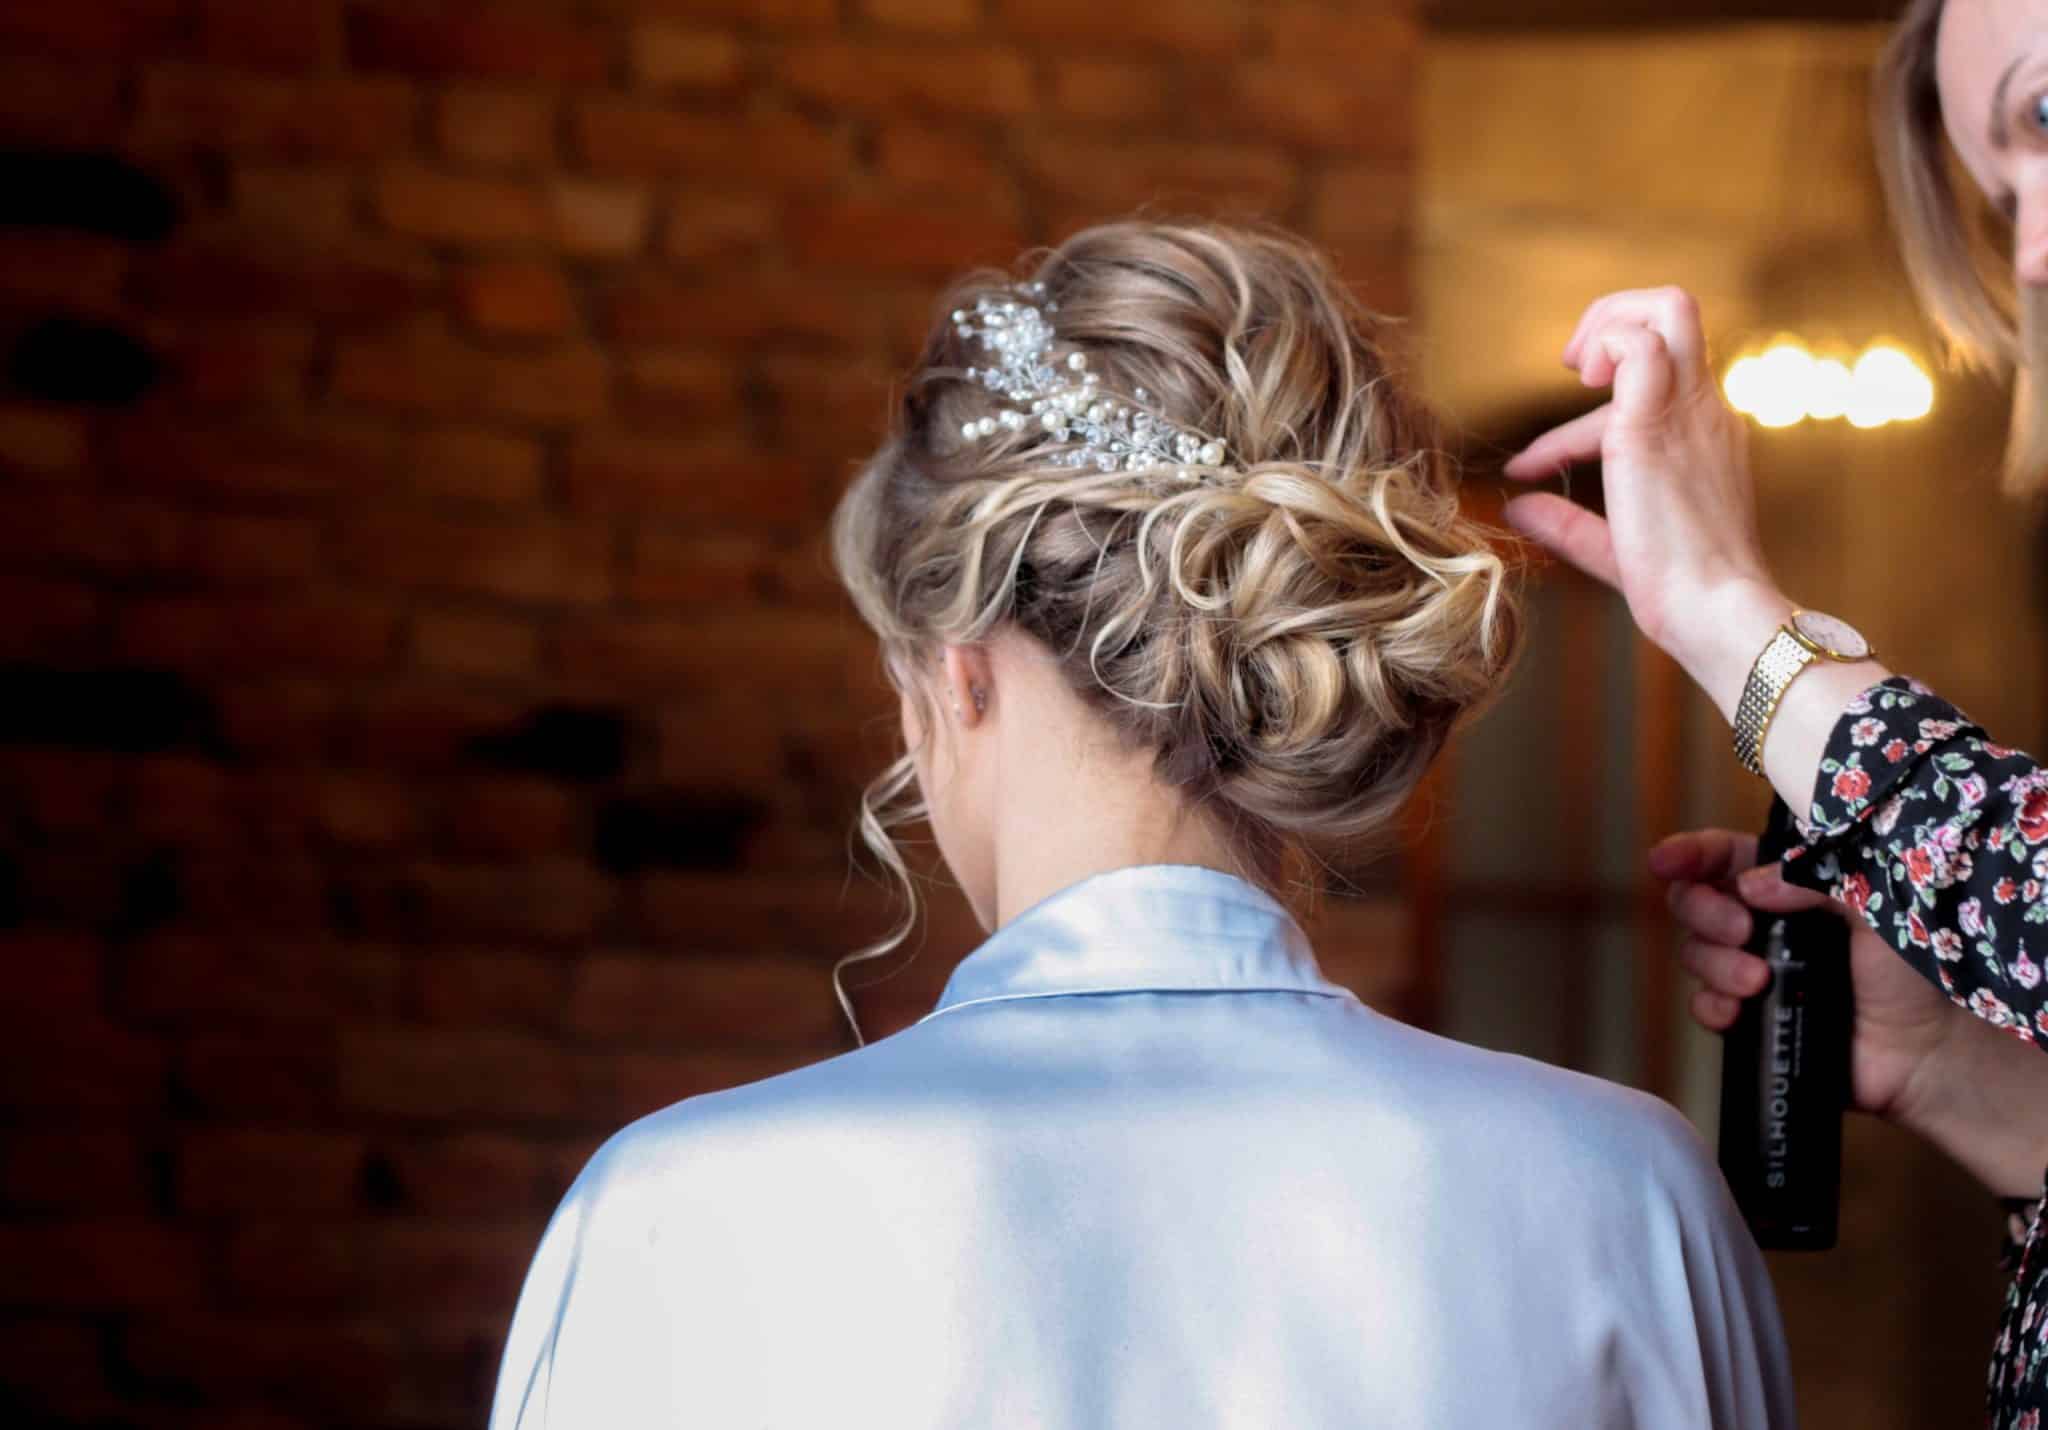 35 idées de coiffures pour une invitée de mariage chic !